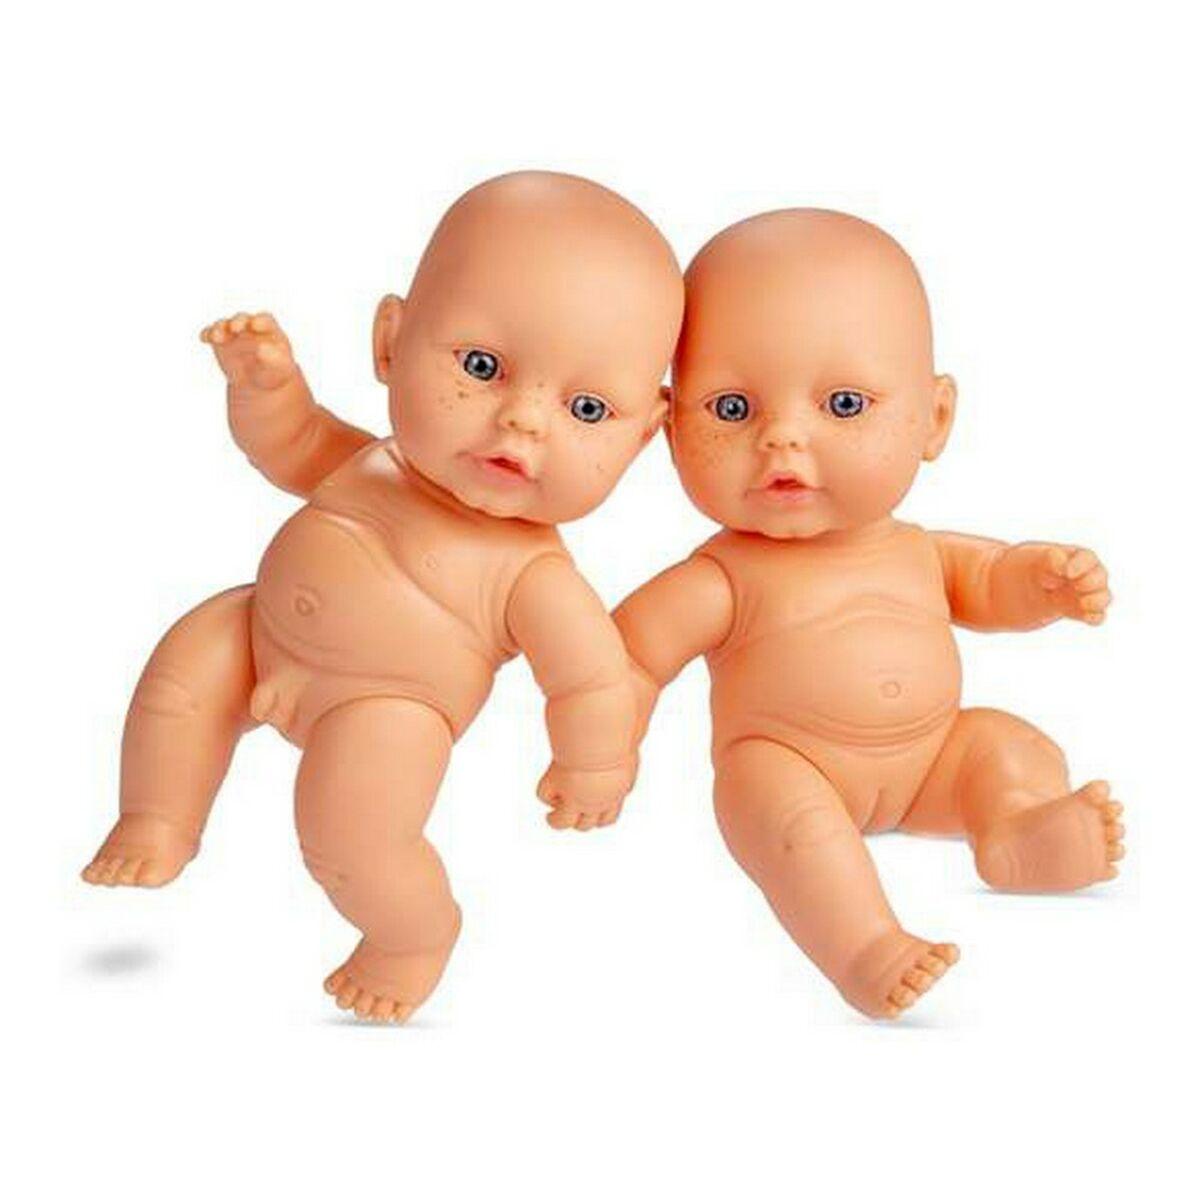 Baby doll Berjuan Newborn 20 cm - VirtuousWares:Global